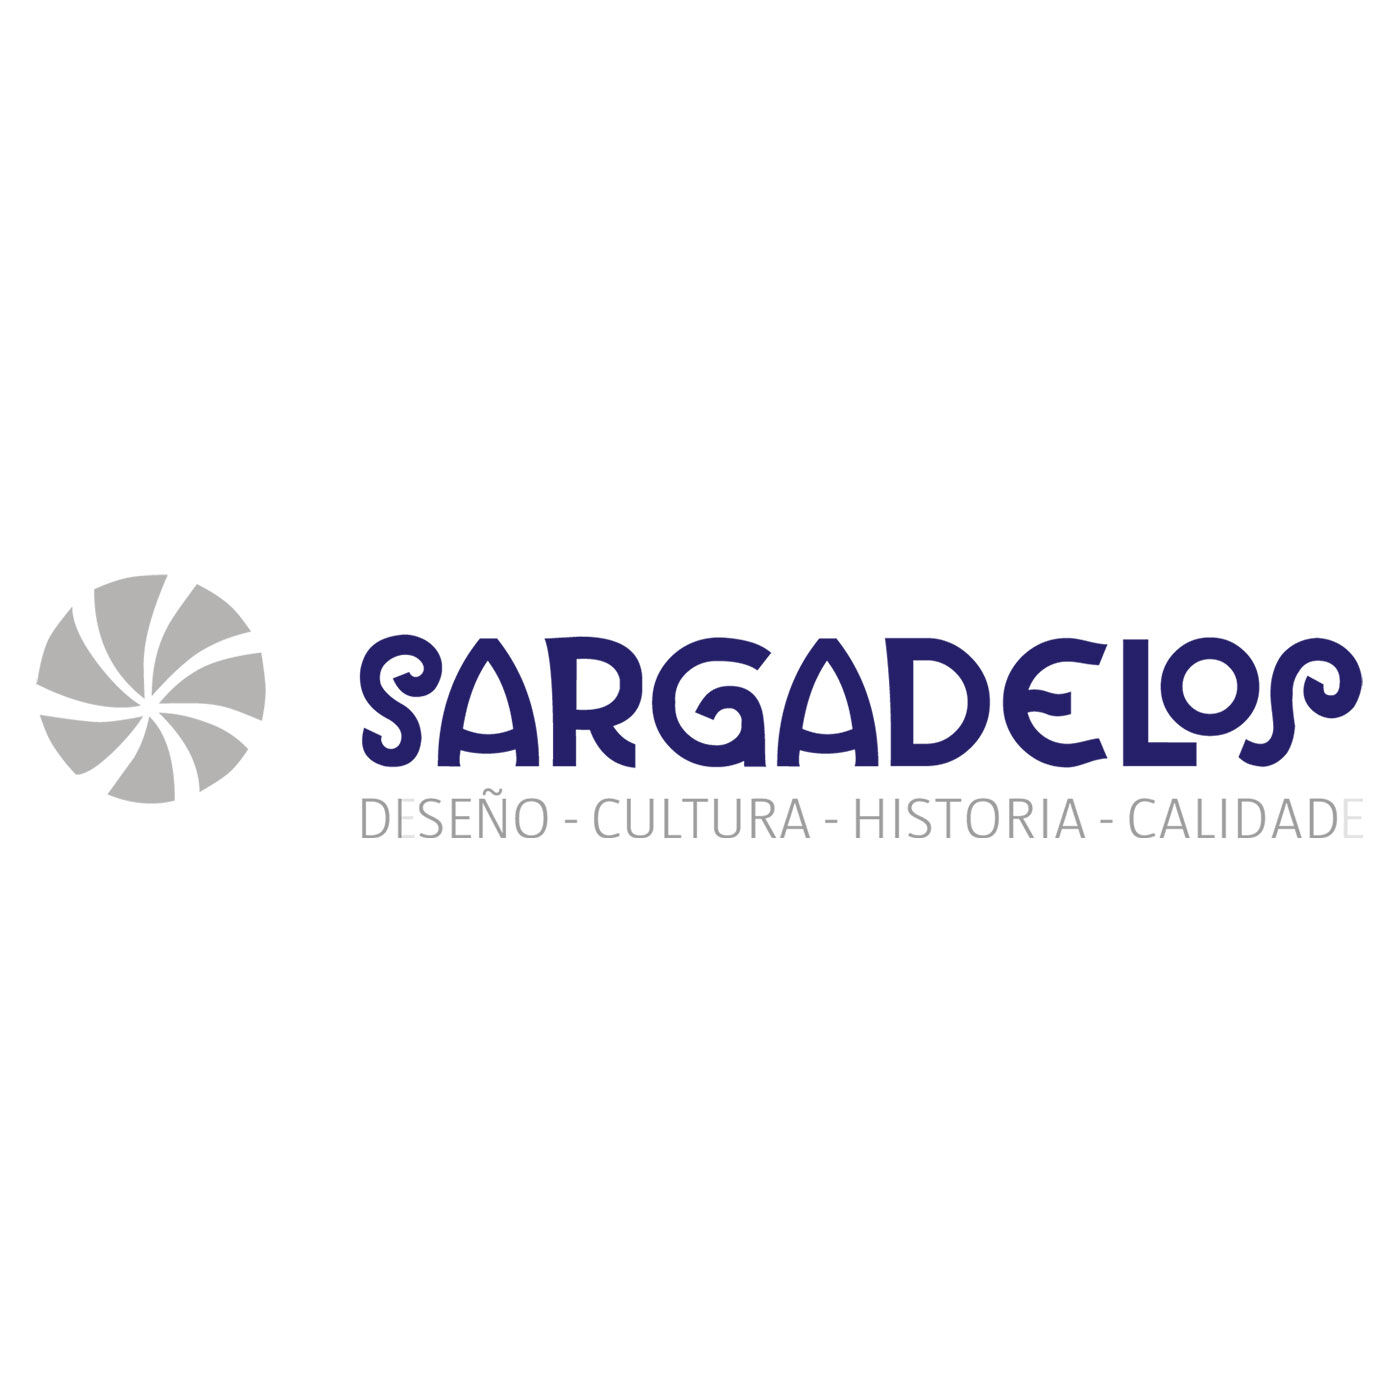 SeeMONO|つるんとした質感と素朴な表情がかわいい　陶器のオブジェ〈アナグマ〉／Ｓａｒｇａｄｅｌｏｓ（サルガデロス）|Sargadelos（サルガデロス）はスペイン北西部のガリシア地方にある陶器メーカーです。職人の手で一点一点製作される Sargadelos の陶器は、スペイン王室や外交官から各国首脳への 土産品に用いられるなど、ガリシア地方独特の青色と共に愛されているプロダクトです。